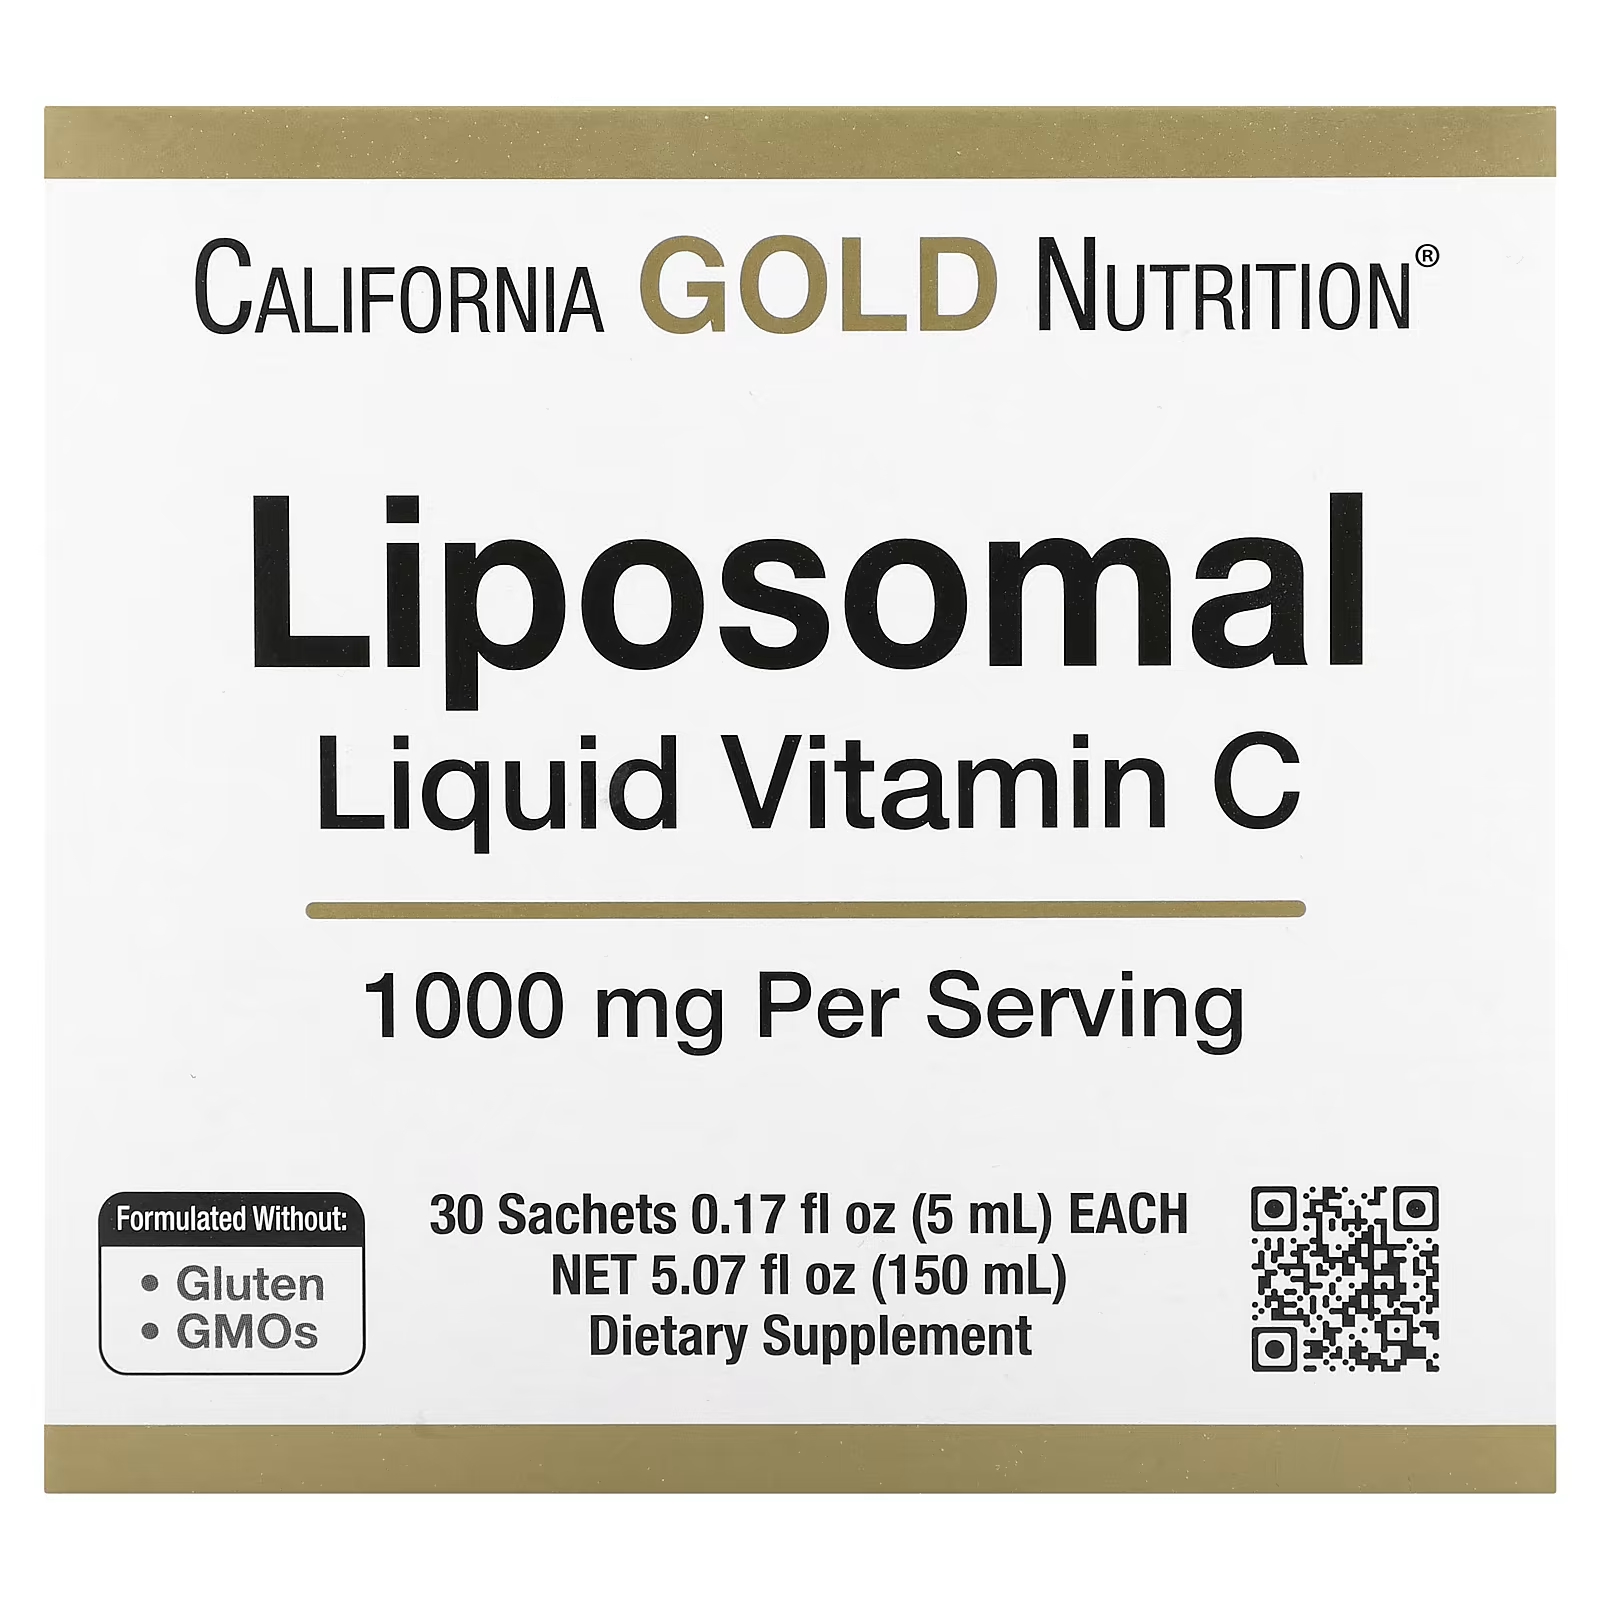 Липосомальный жидкий витамин С без вкуса, 1000 мг, 30 пакетиков California Gold Nutrition липосомальный витамин c california gold nutrition 1000 мг 30 пакетиков